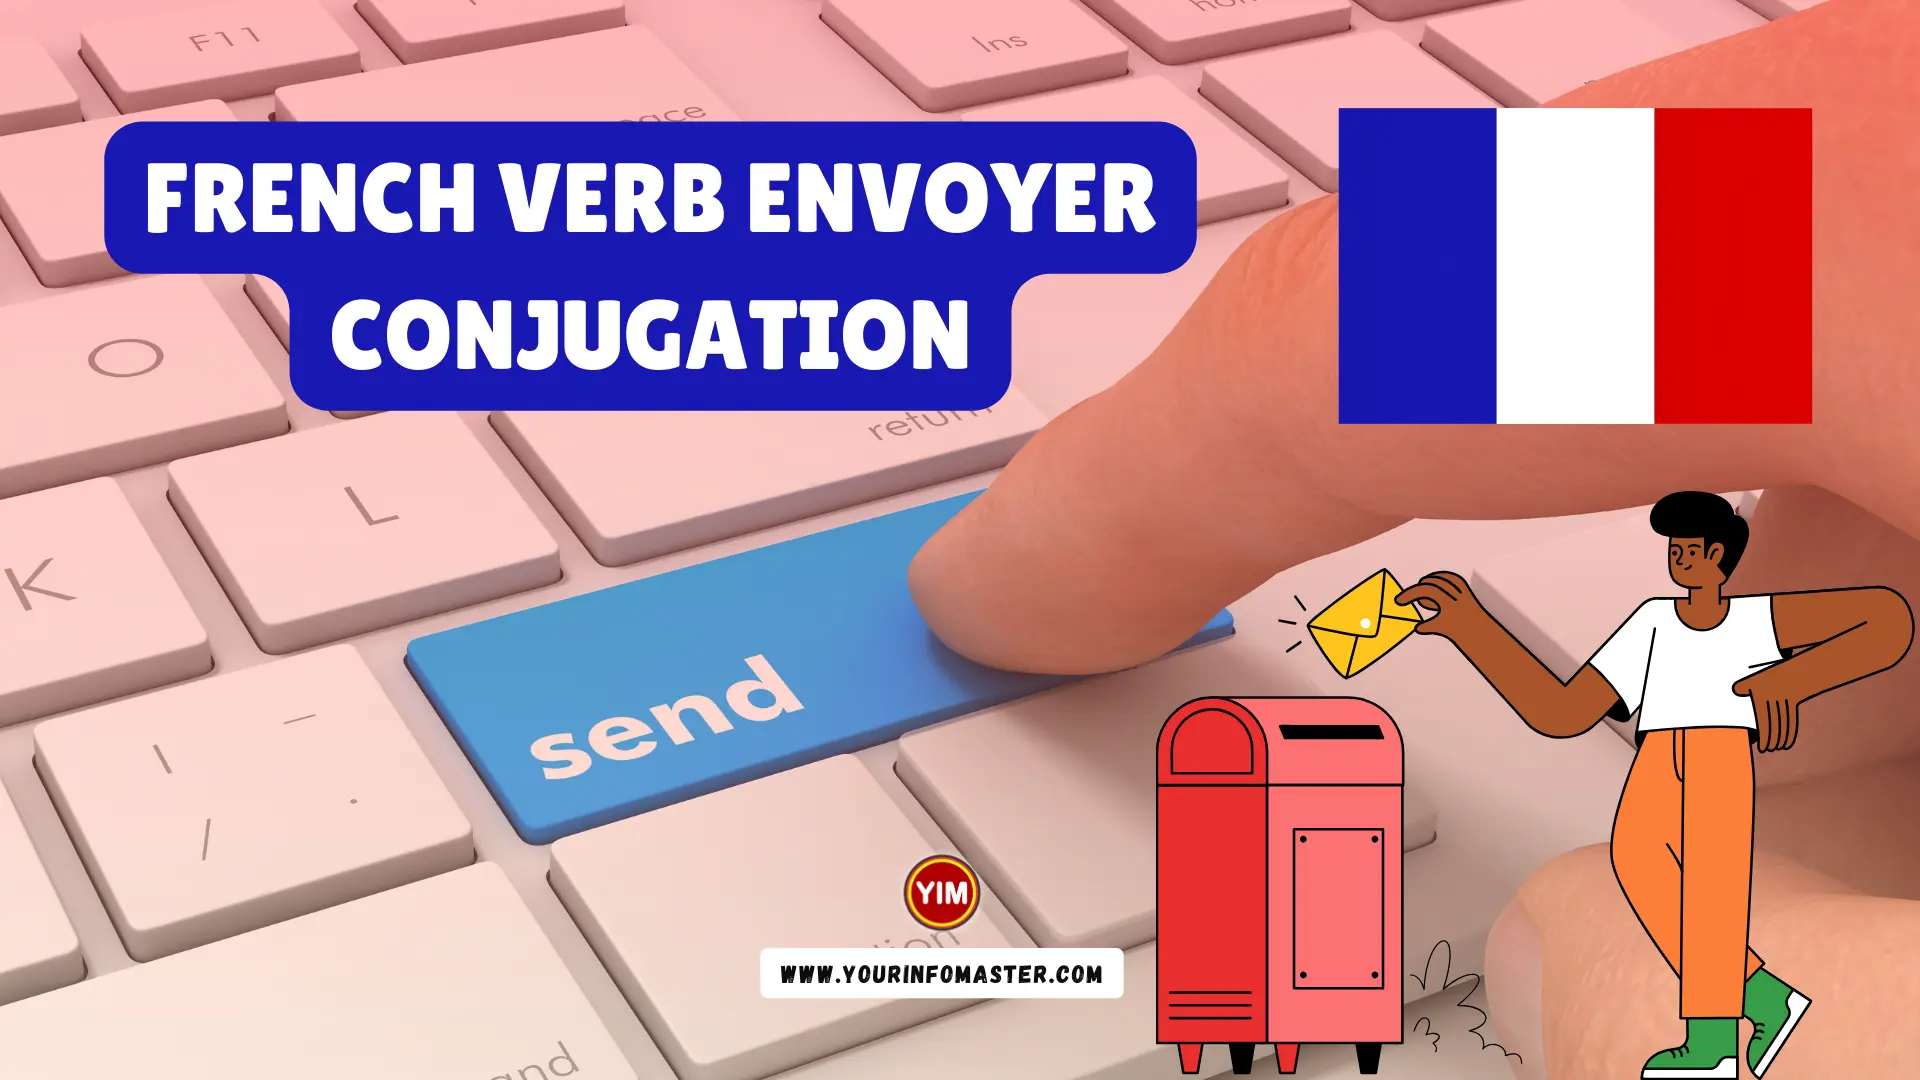 Envoyer Verb Devoir Conjugation, Meaning, Translation, Examples